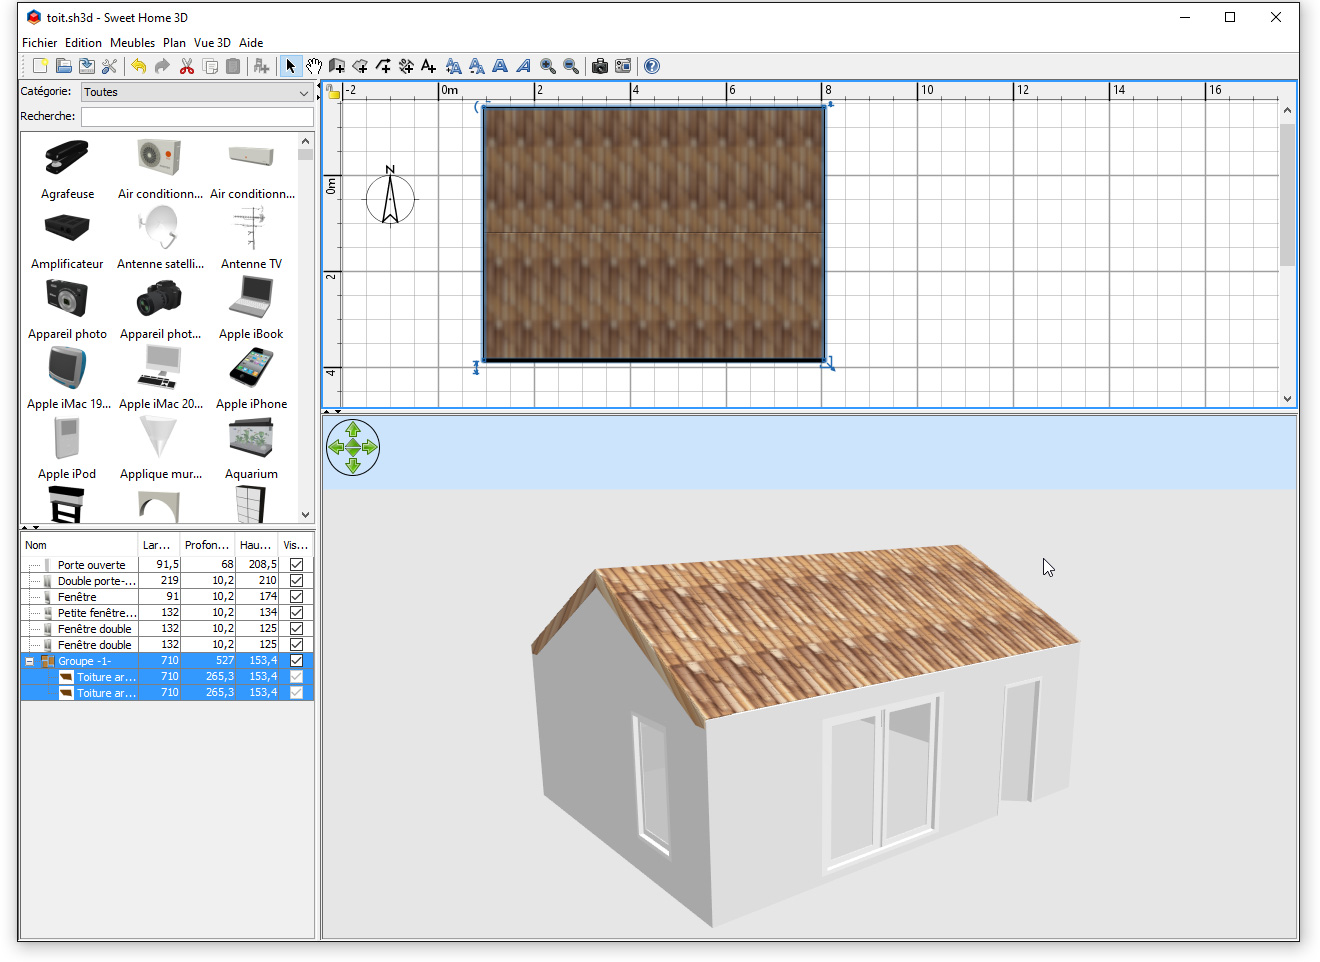 Comment ajouter un toit dans Sweet Home 3D